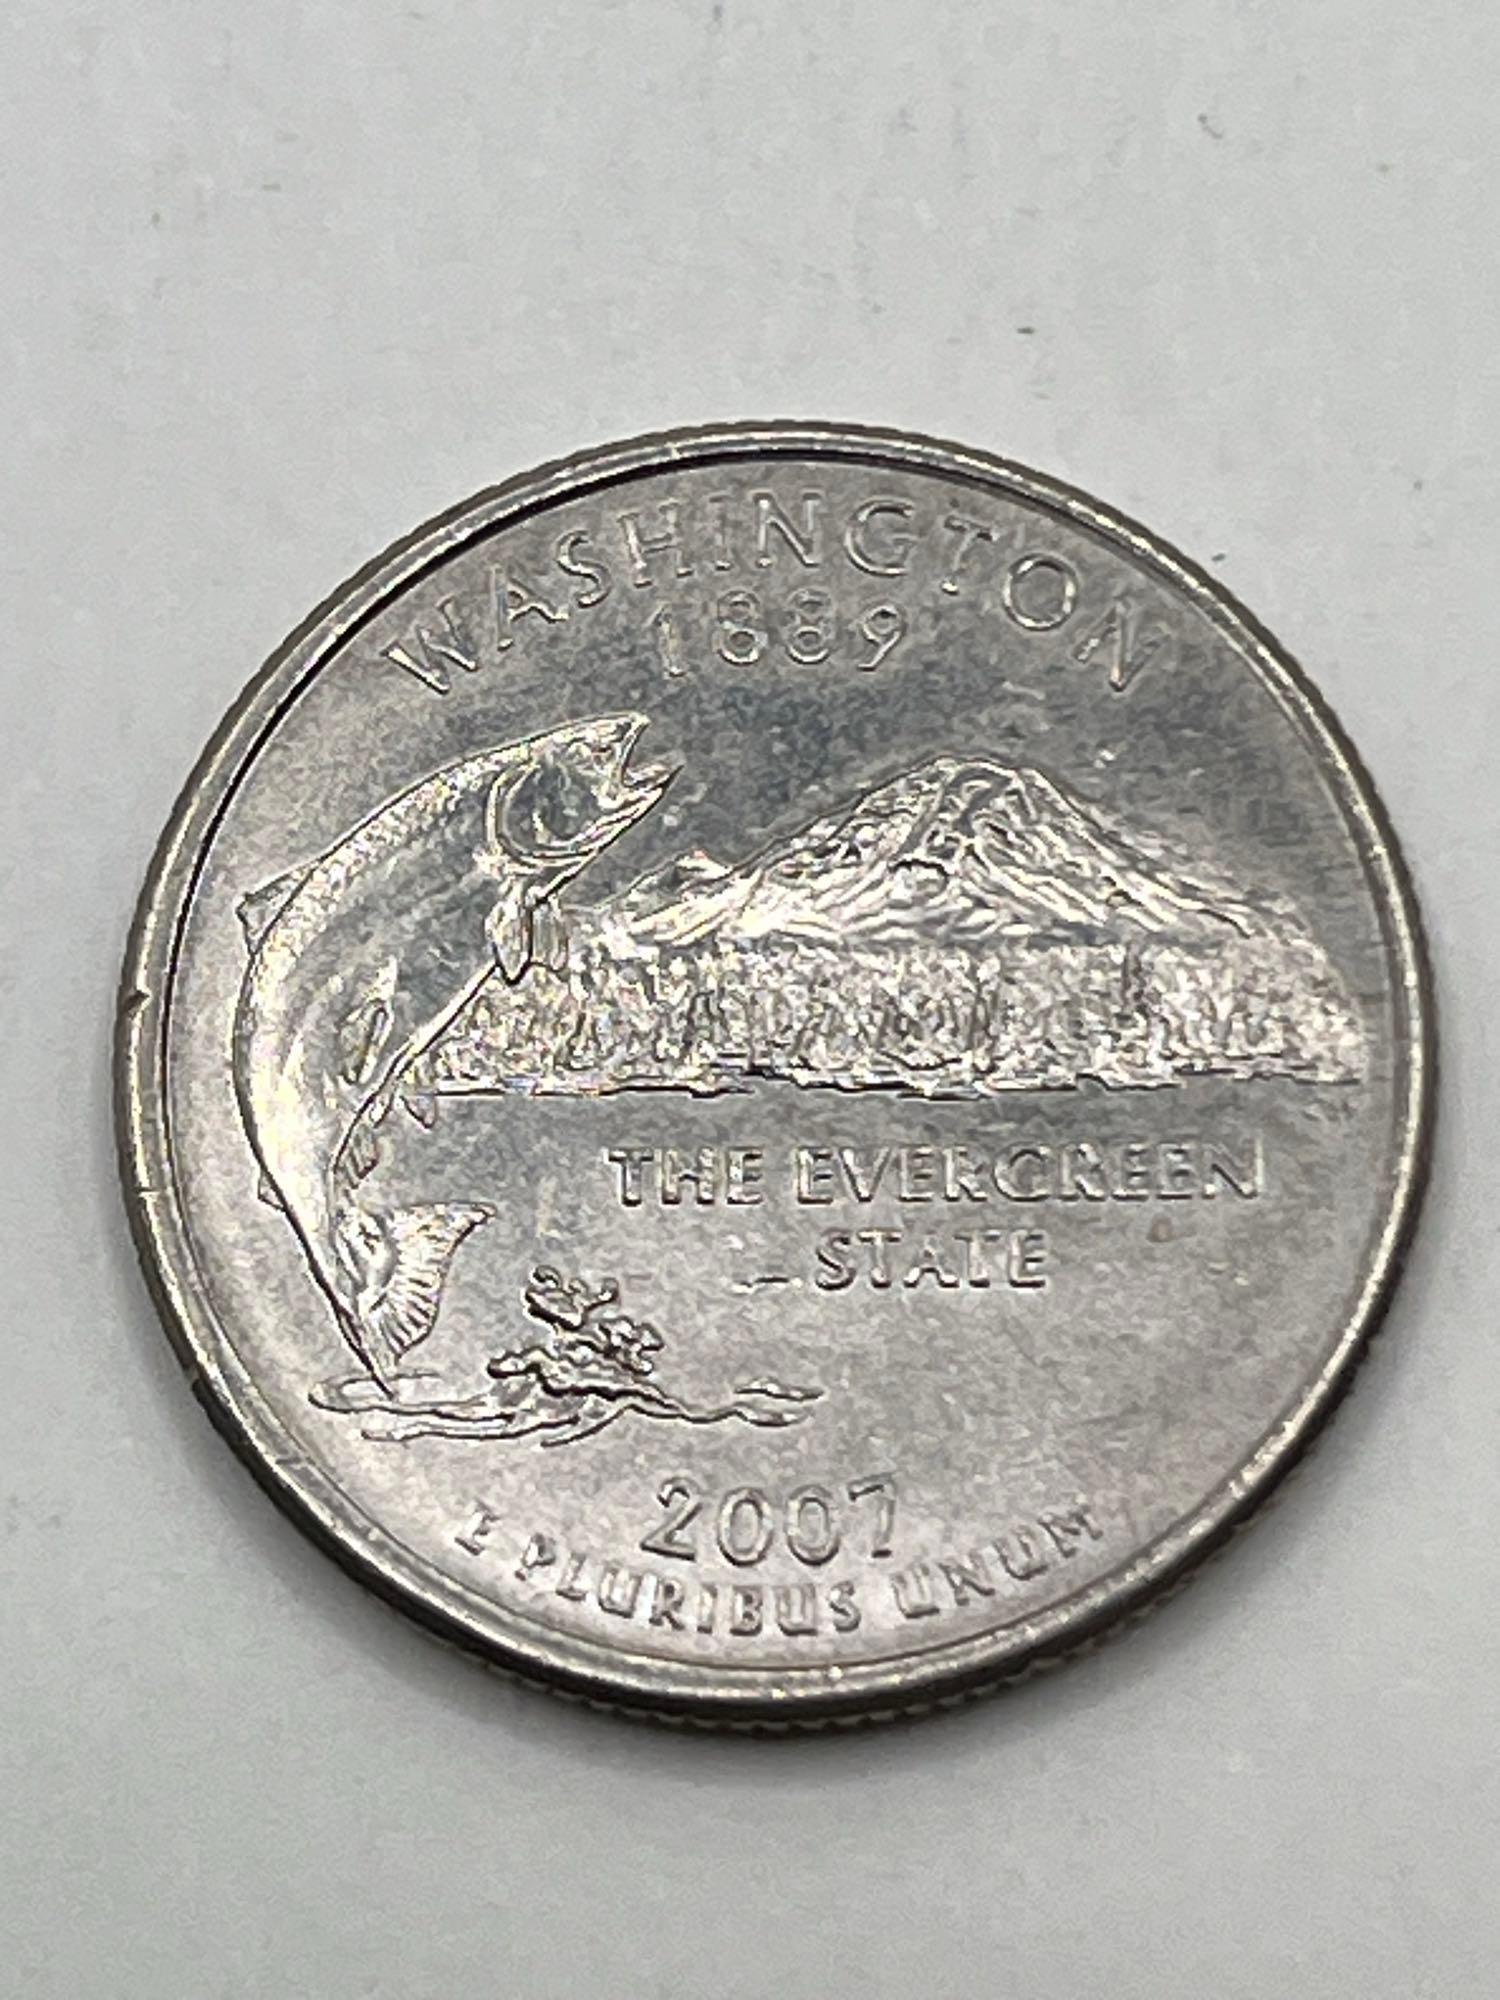 Quarters, Washington 2007P, AU, (7 Total)